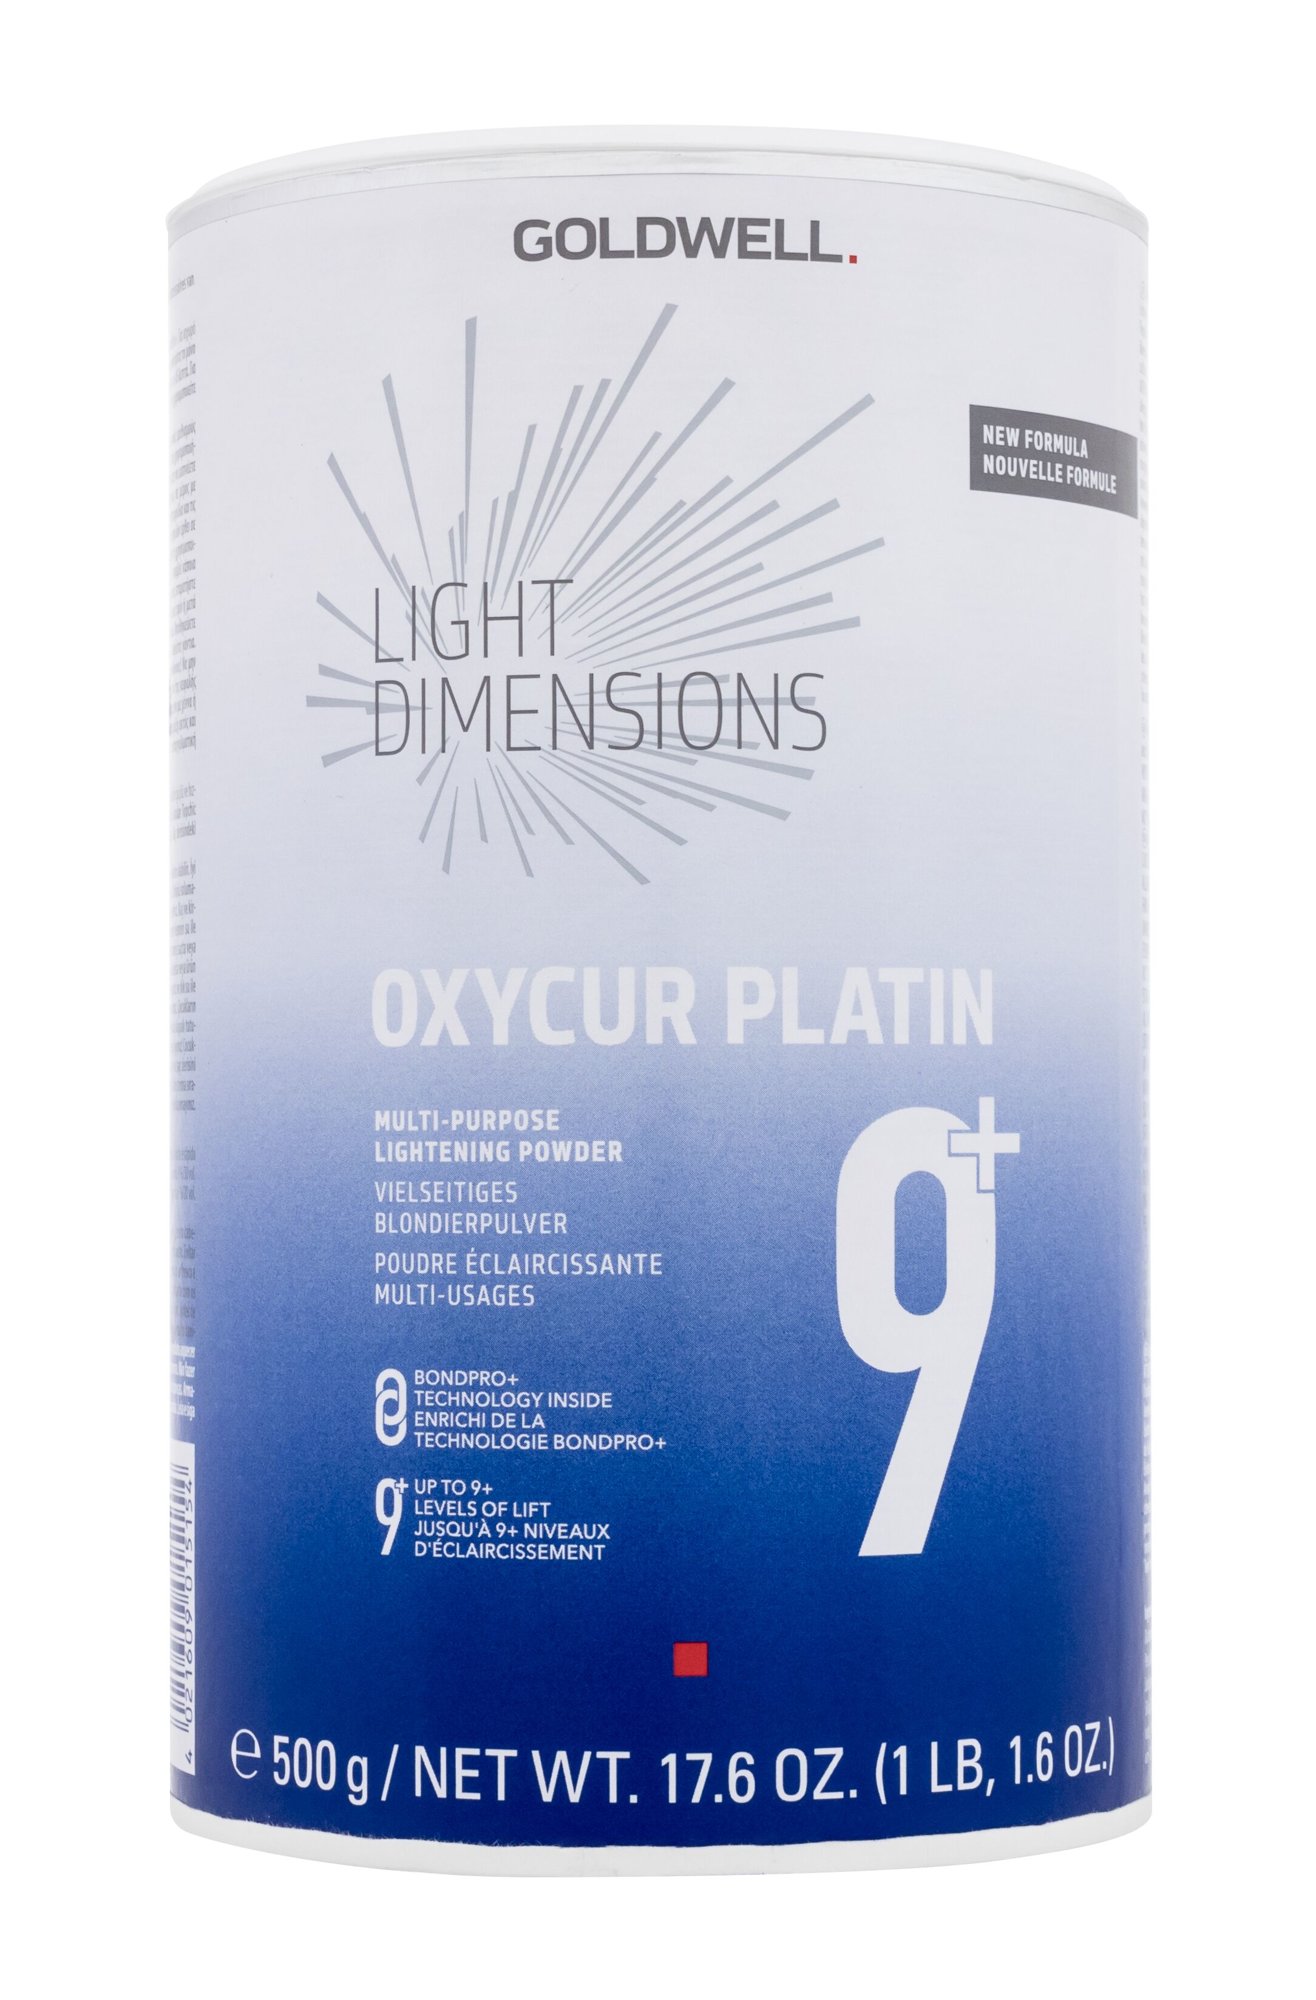 Goldwell Light Dimensions Oxycur Platin plaukų dažai